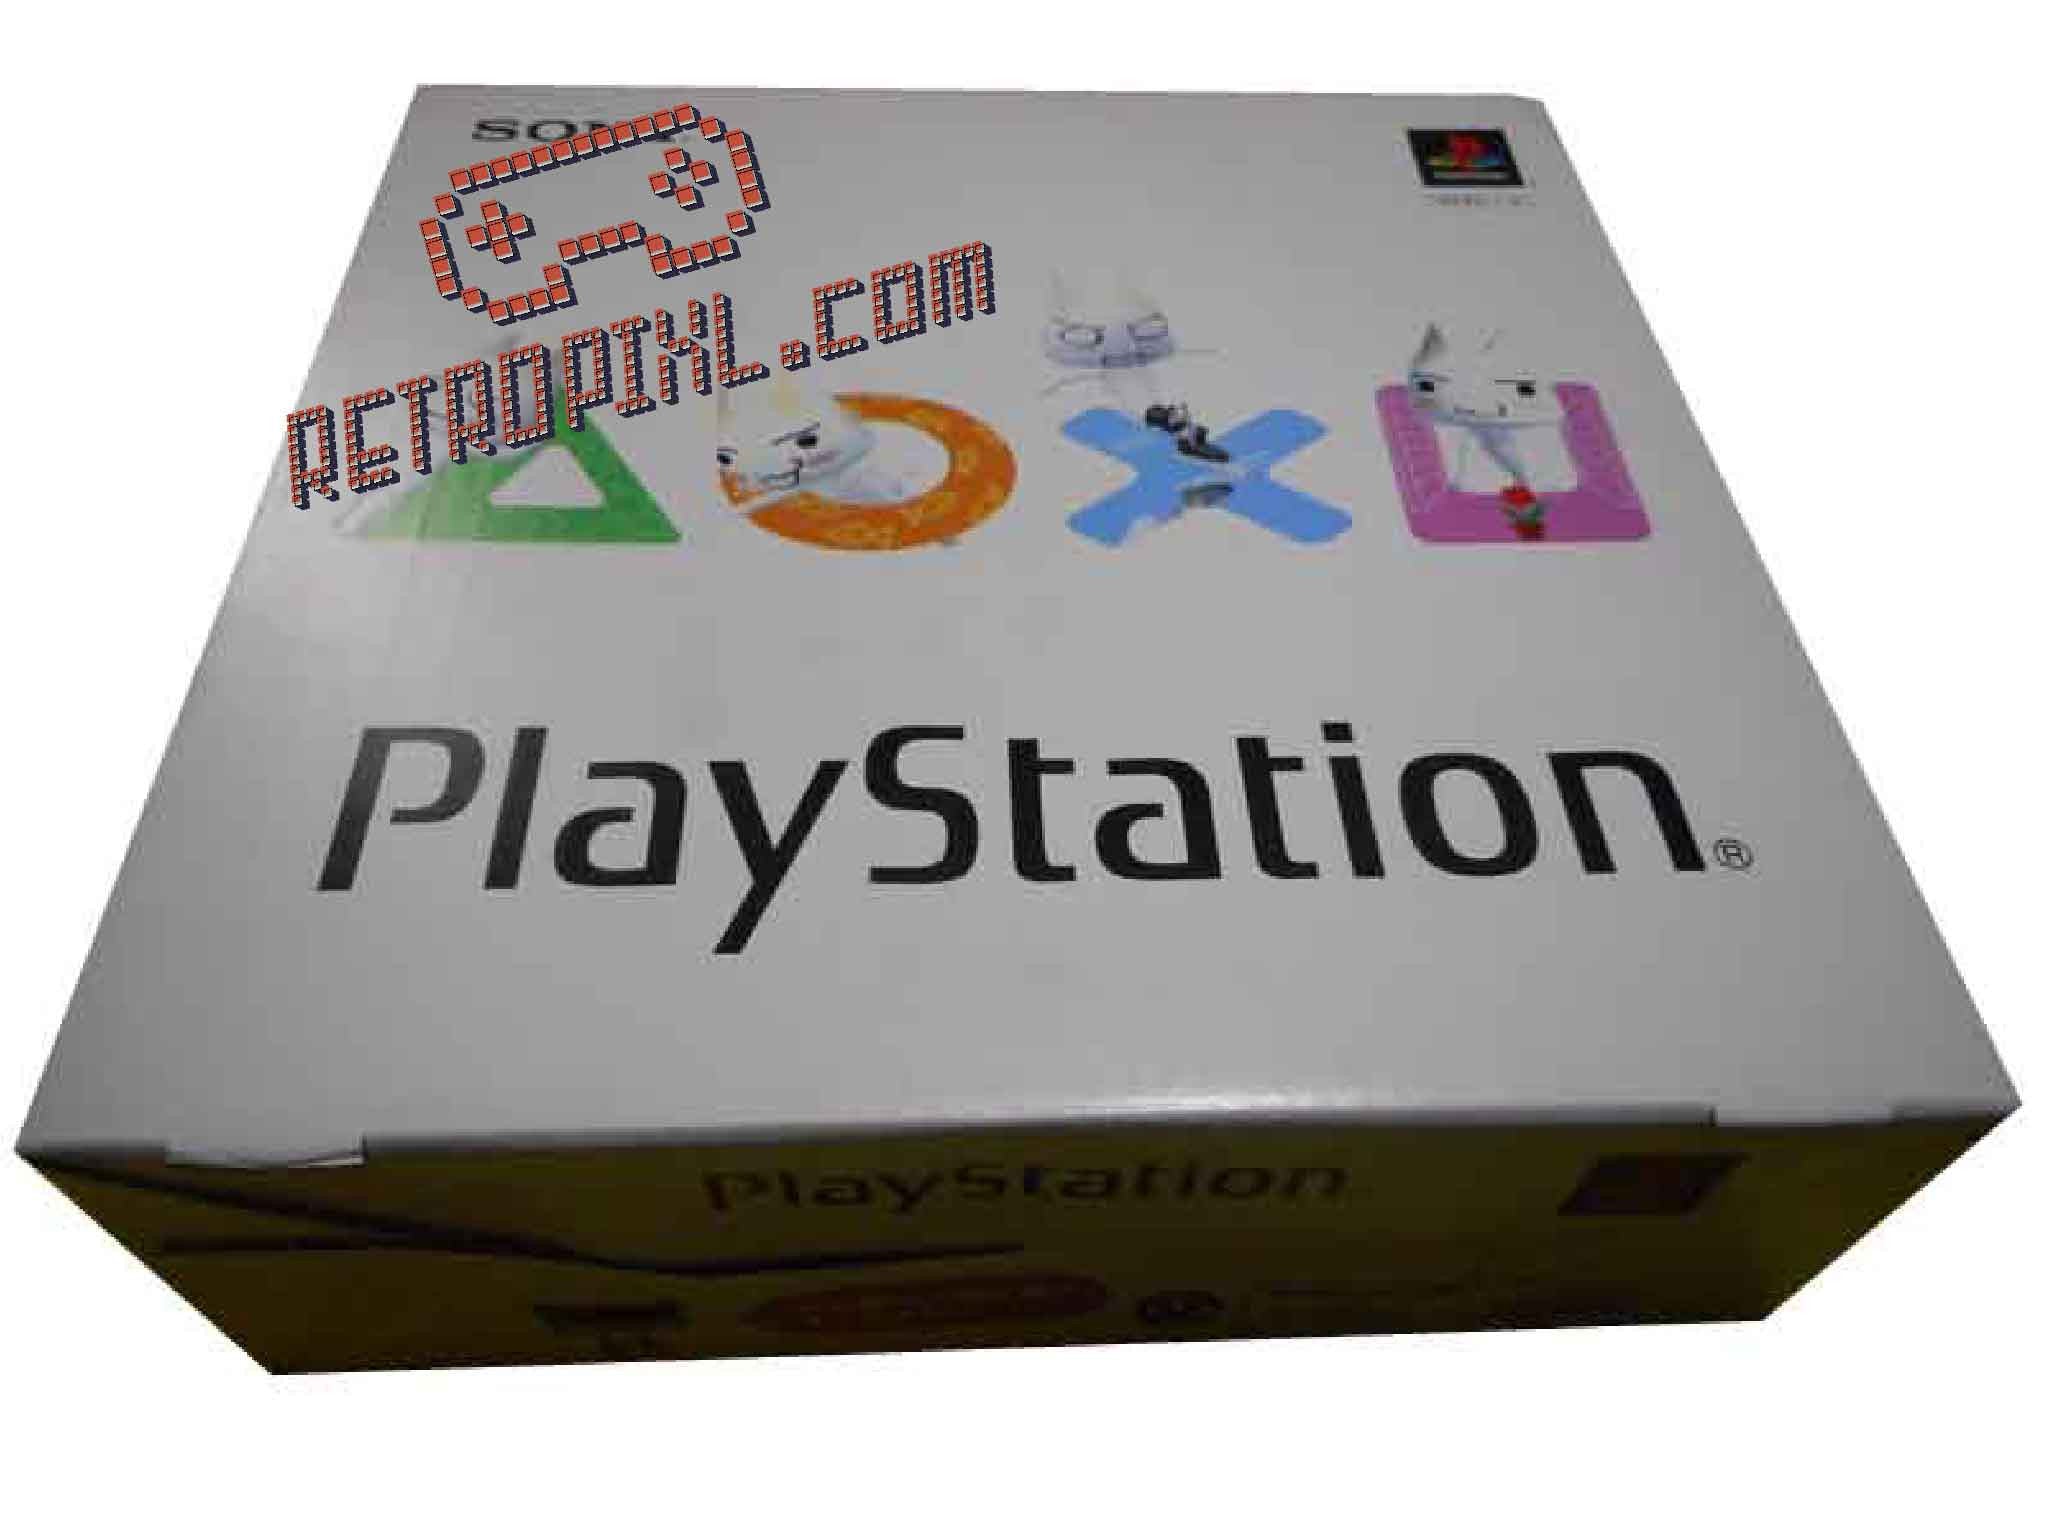 Sony Playstation 1 (PS1)